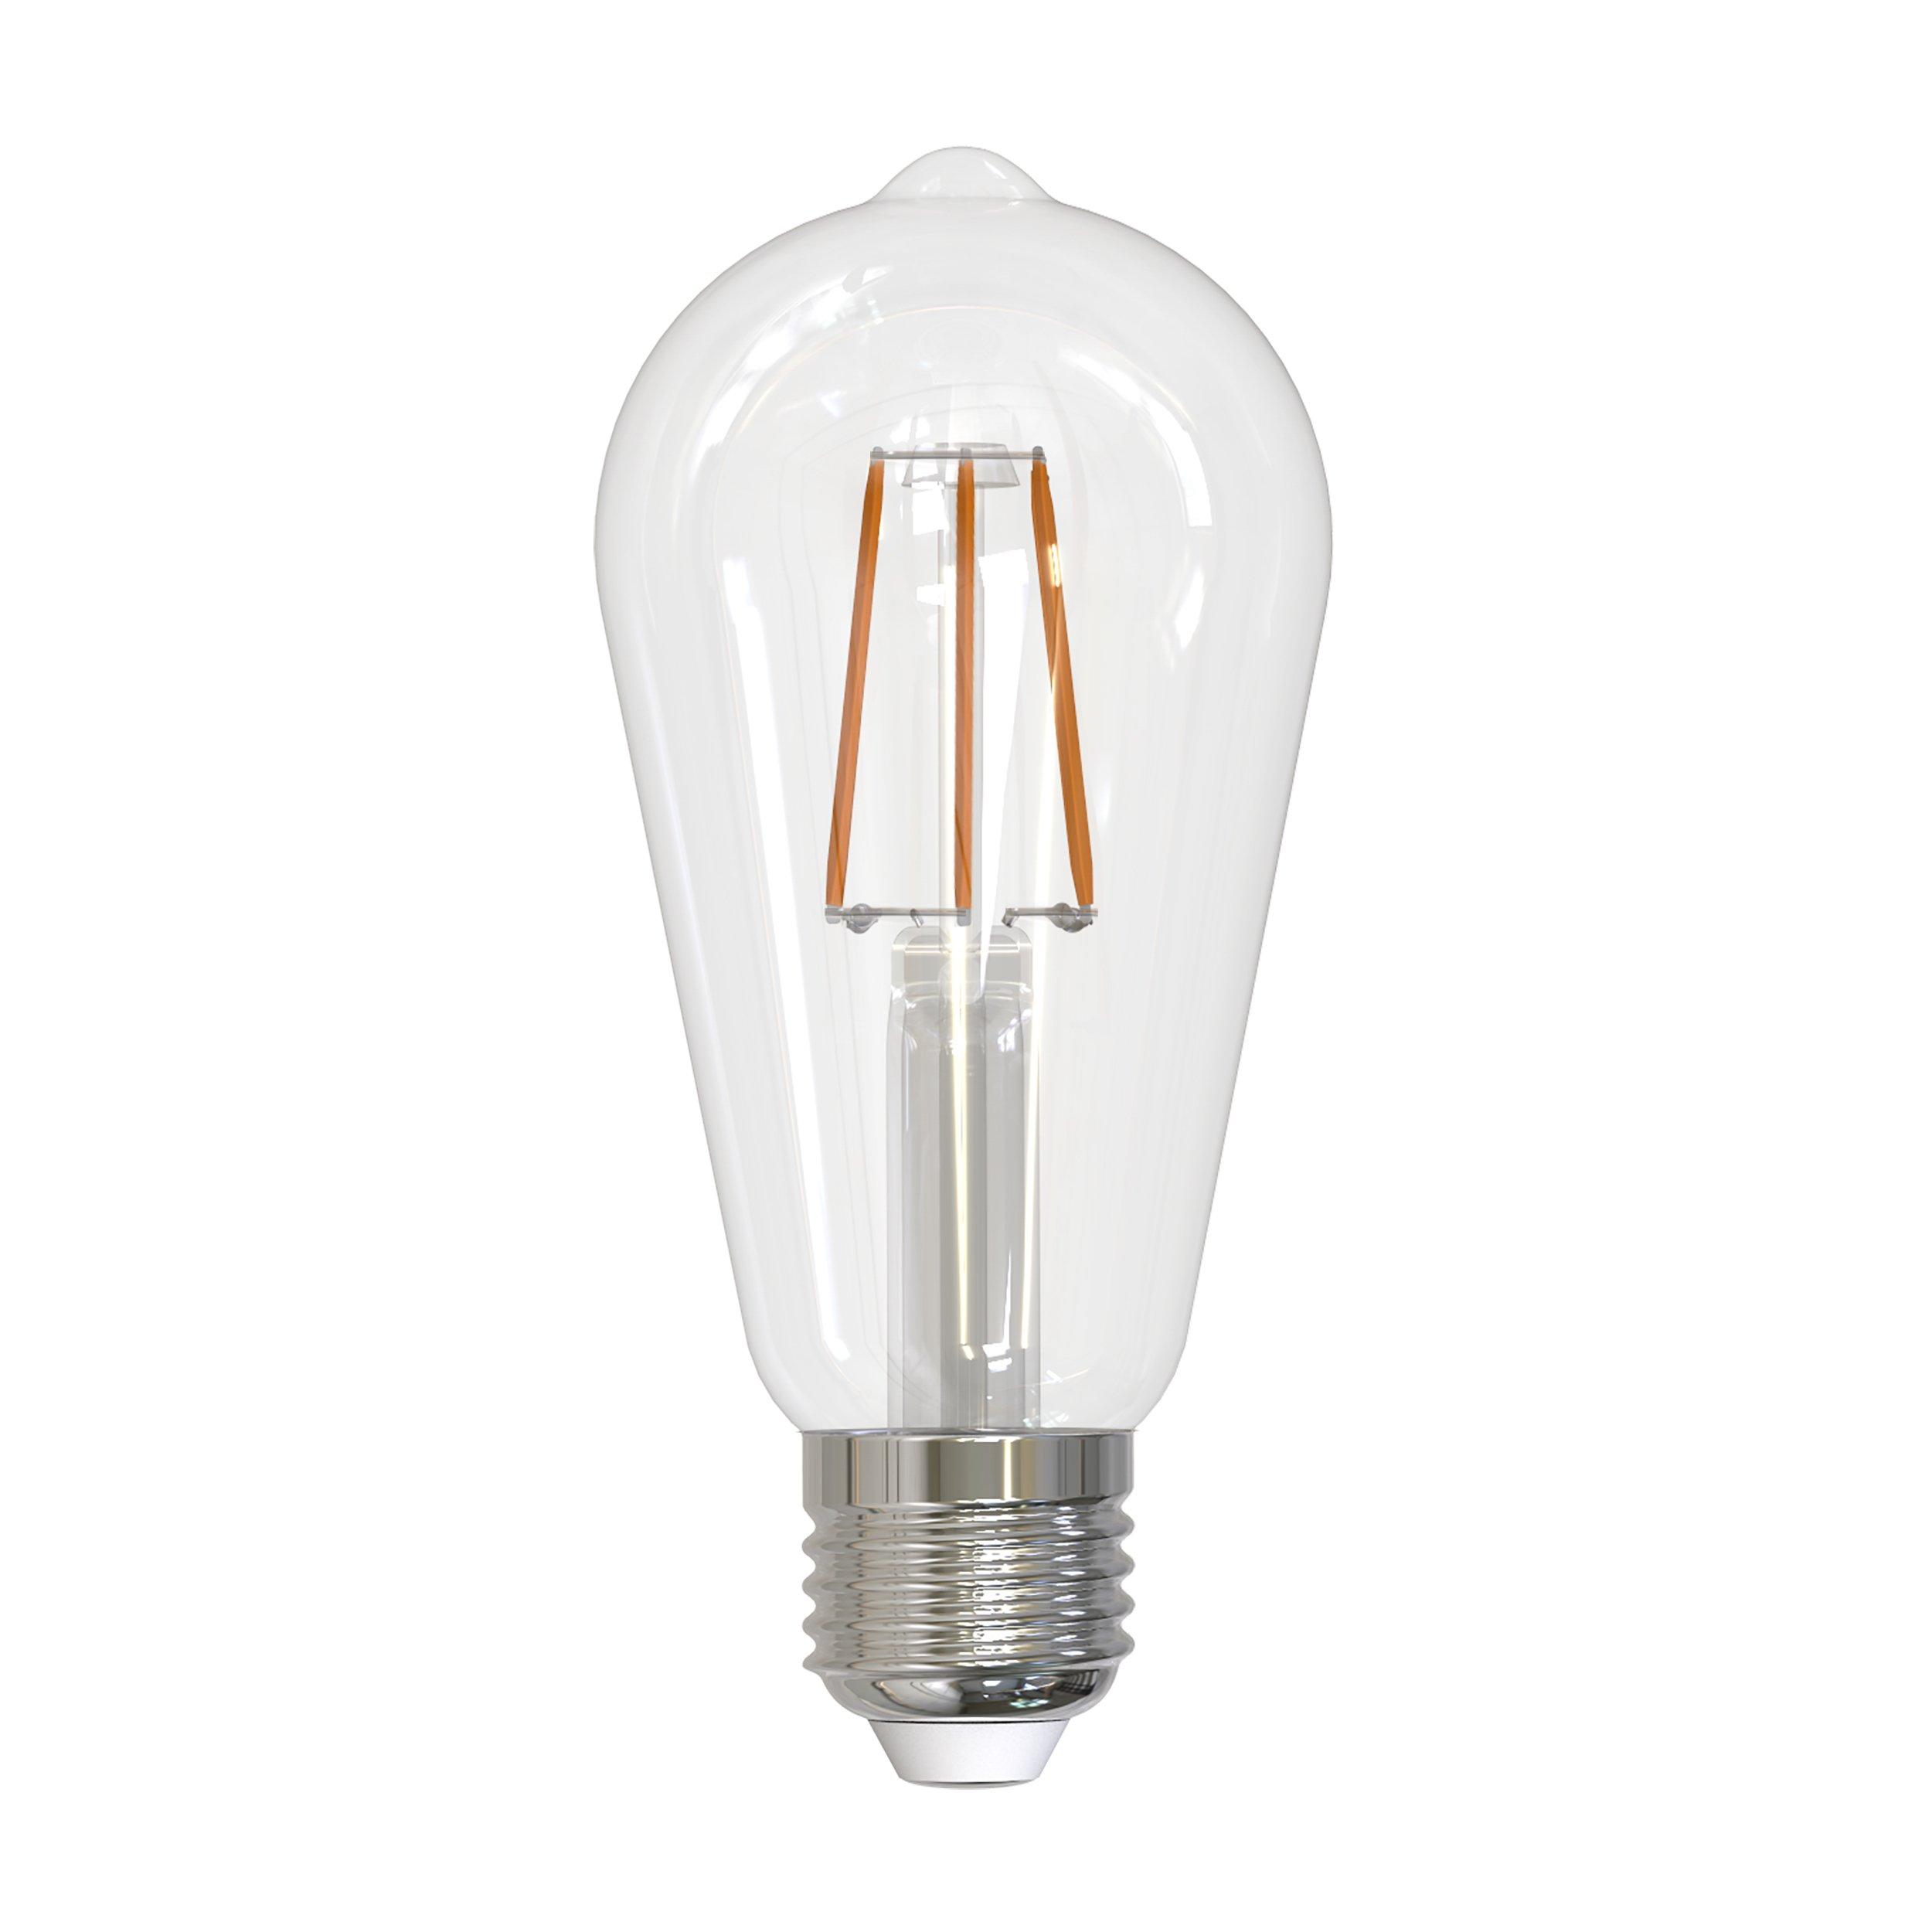 ST19 4.5w Filament LED Light Bulb 2pk.